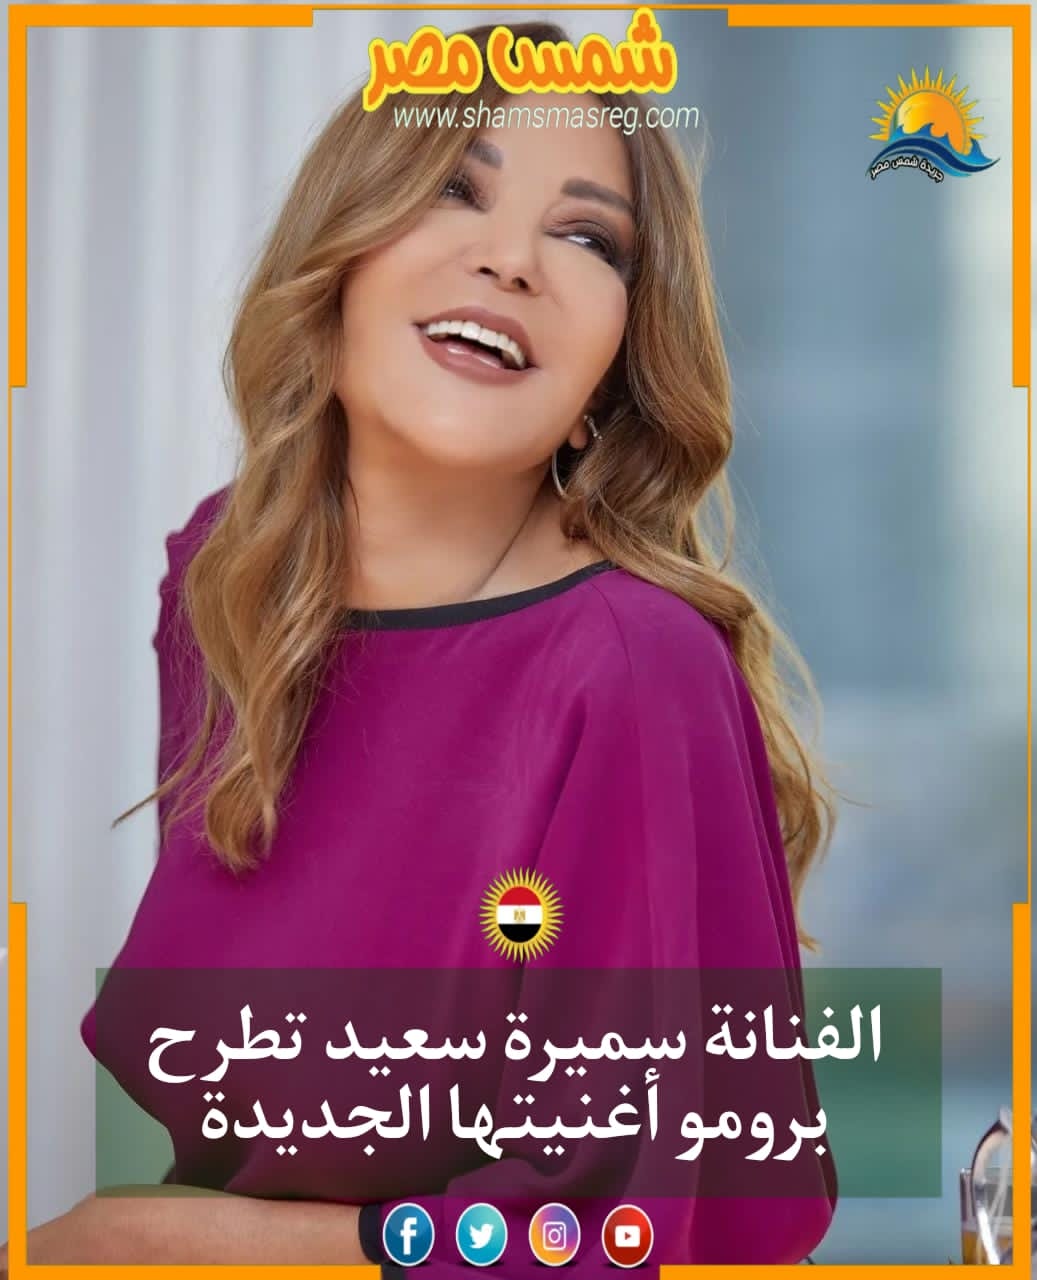 |شمس مصر|.. الفنانة سميرة سعيد تطرح برومو أغنيتها الجديدة